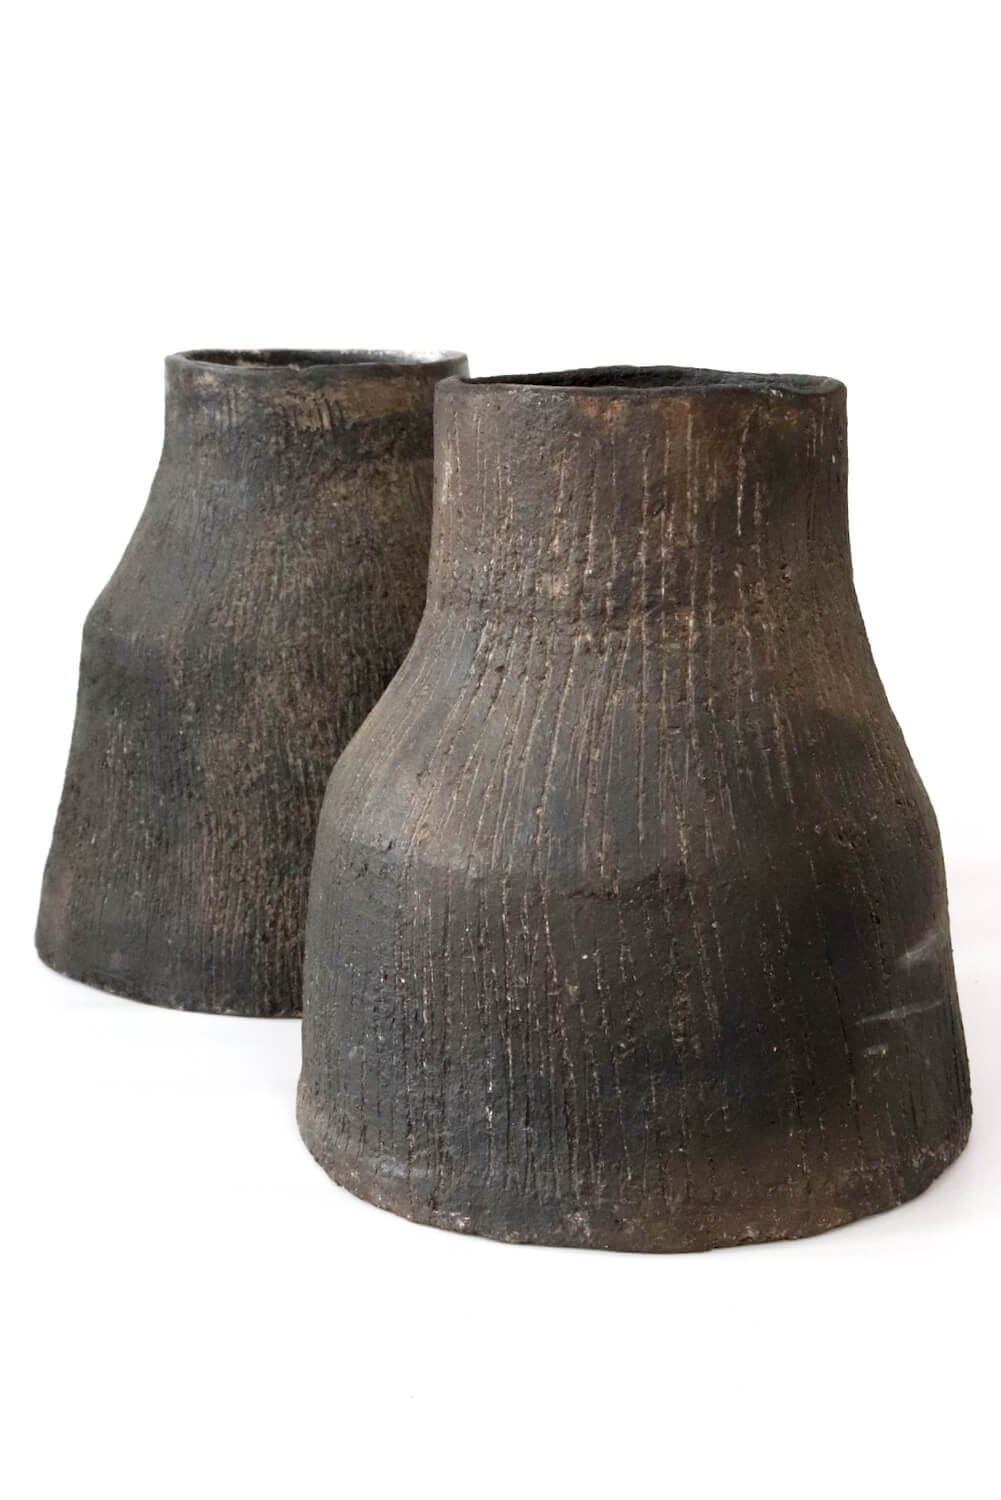 vasen keramik tunesien